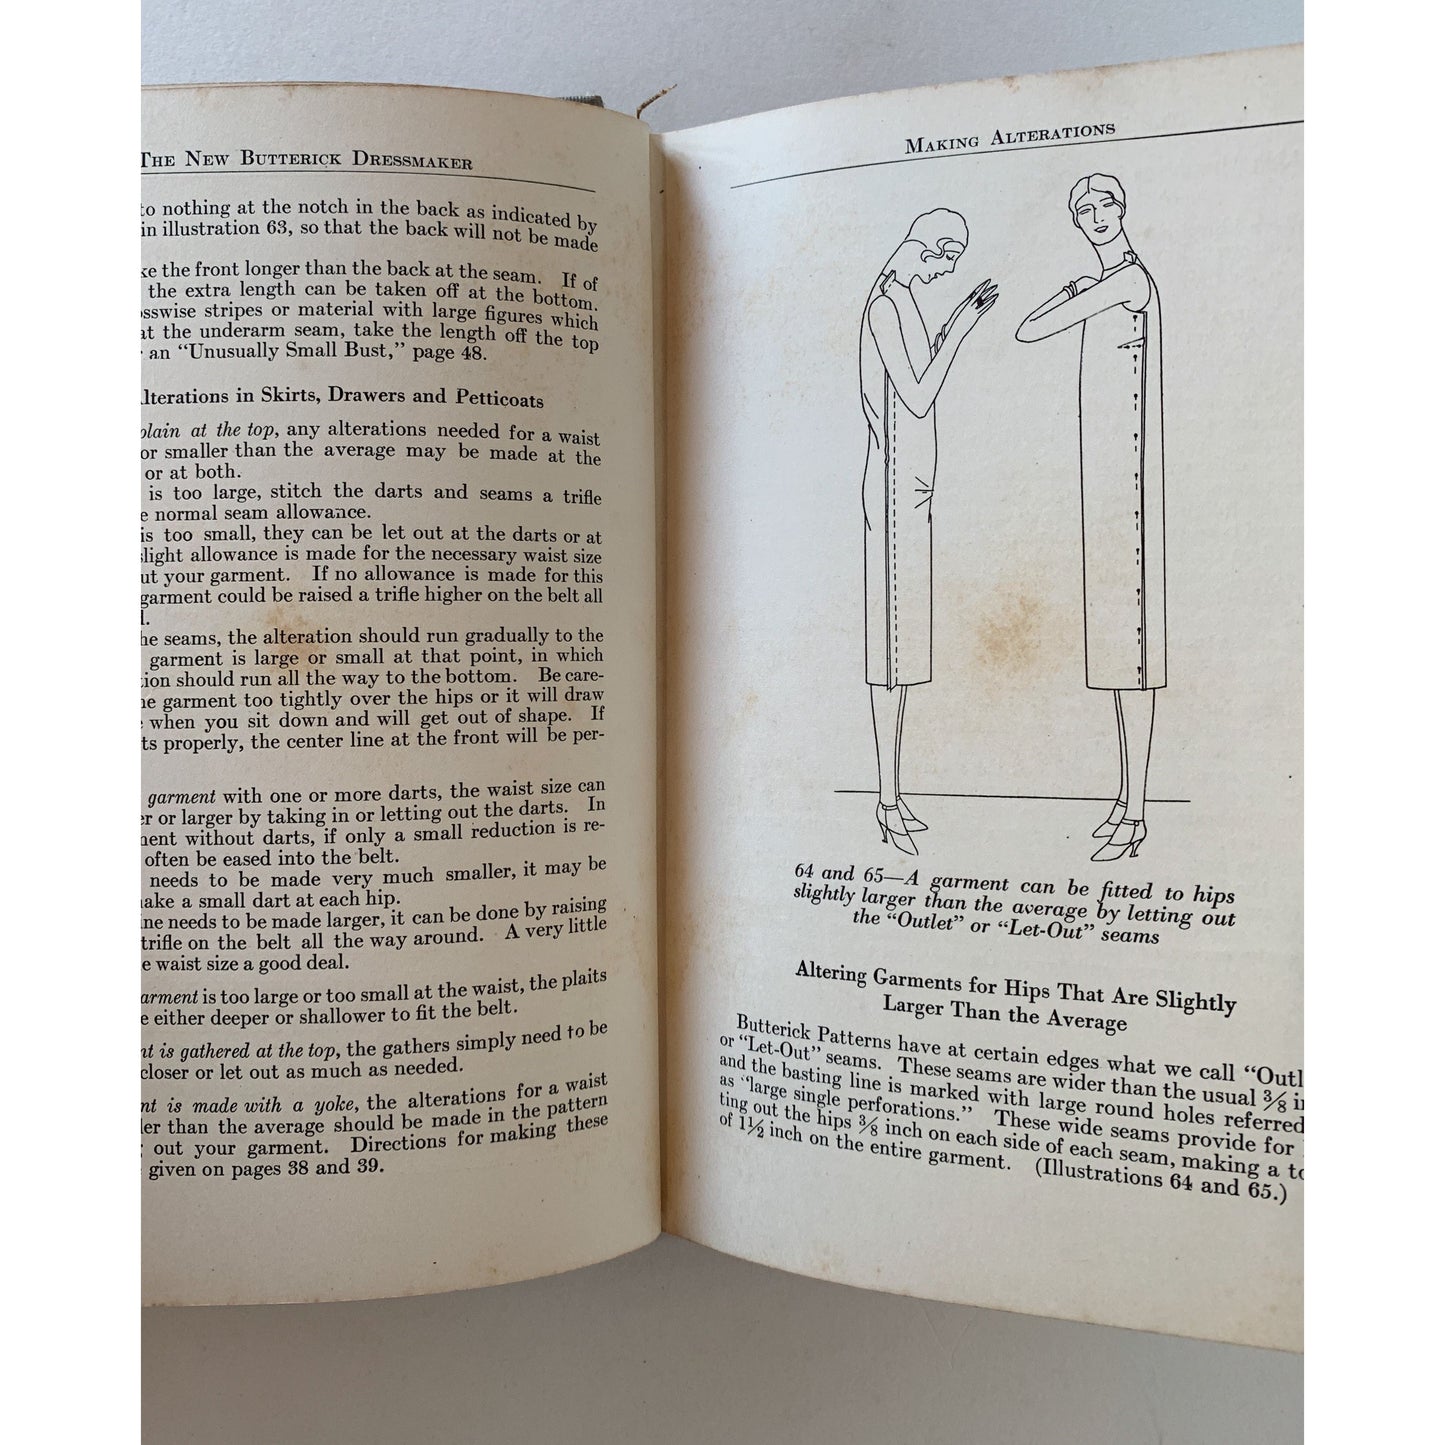 The New Butterick Dressmaker, Art Decor Illustrations, Flapper Dresses, 1927 Hardcover